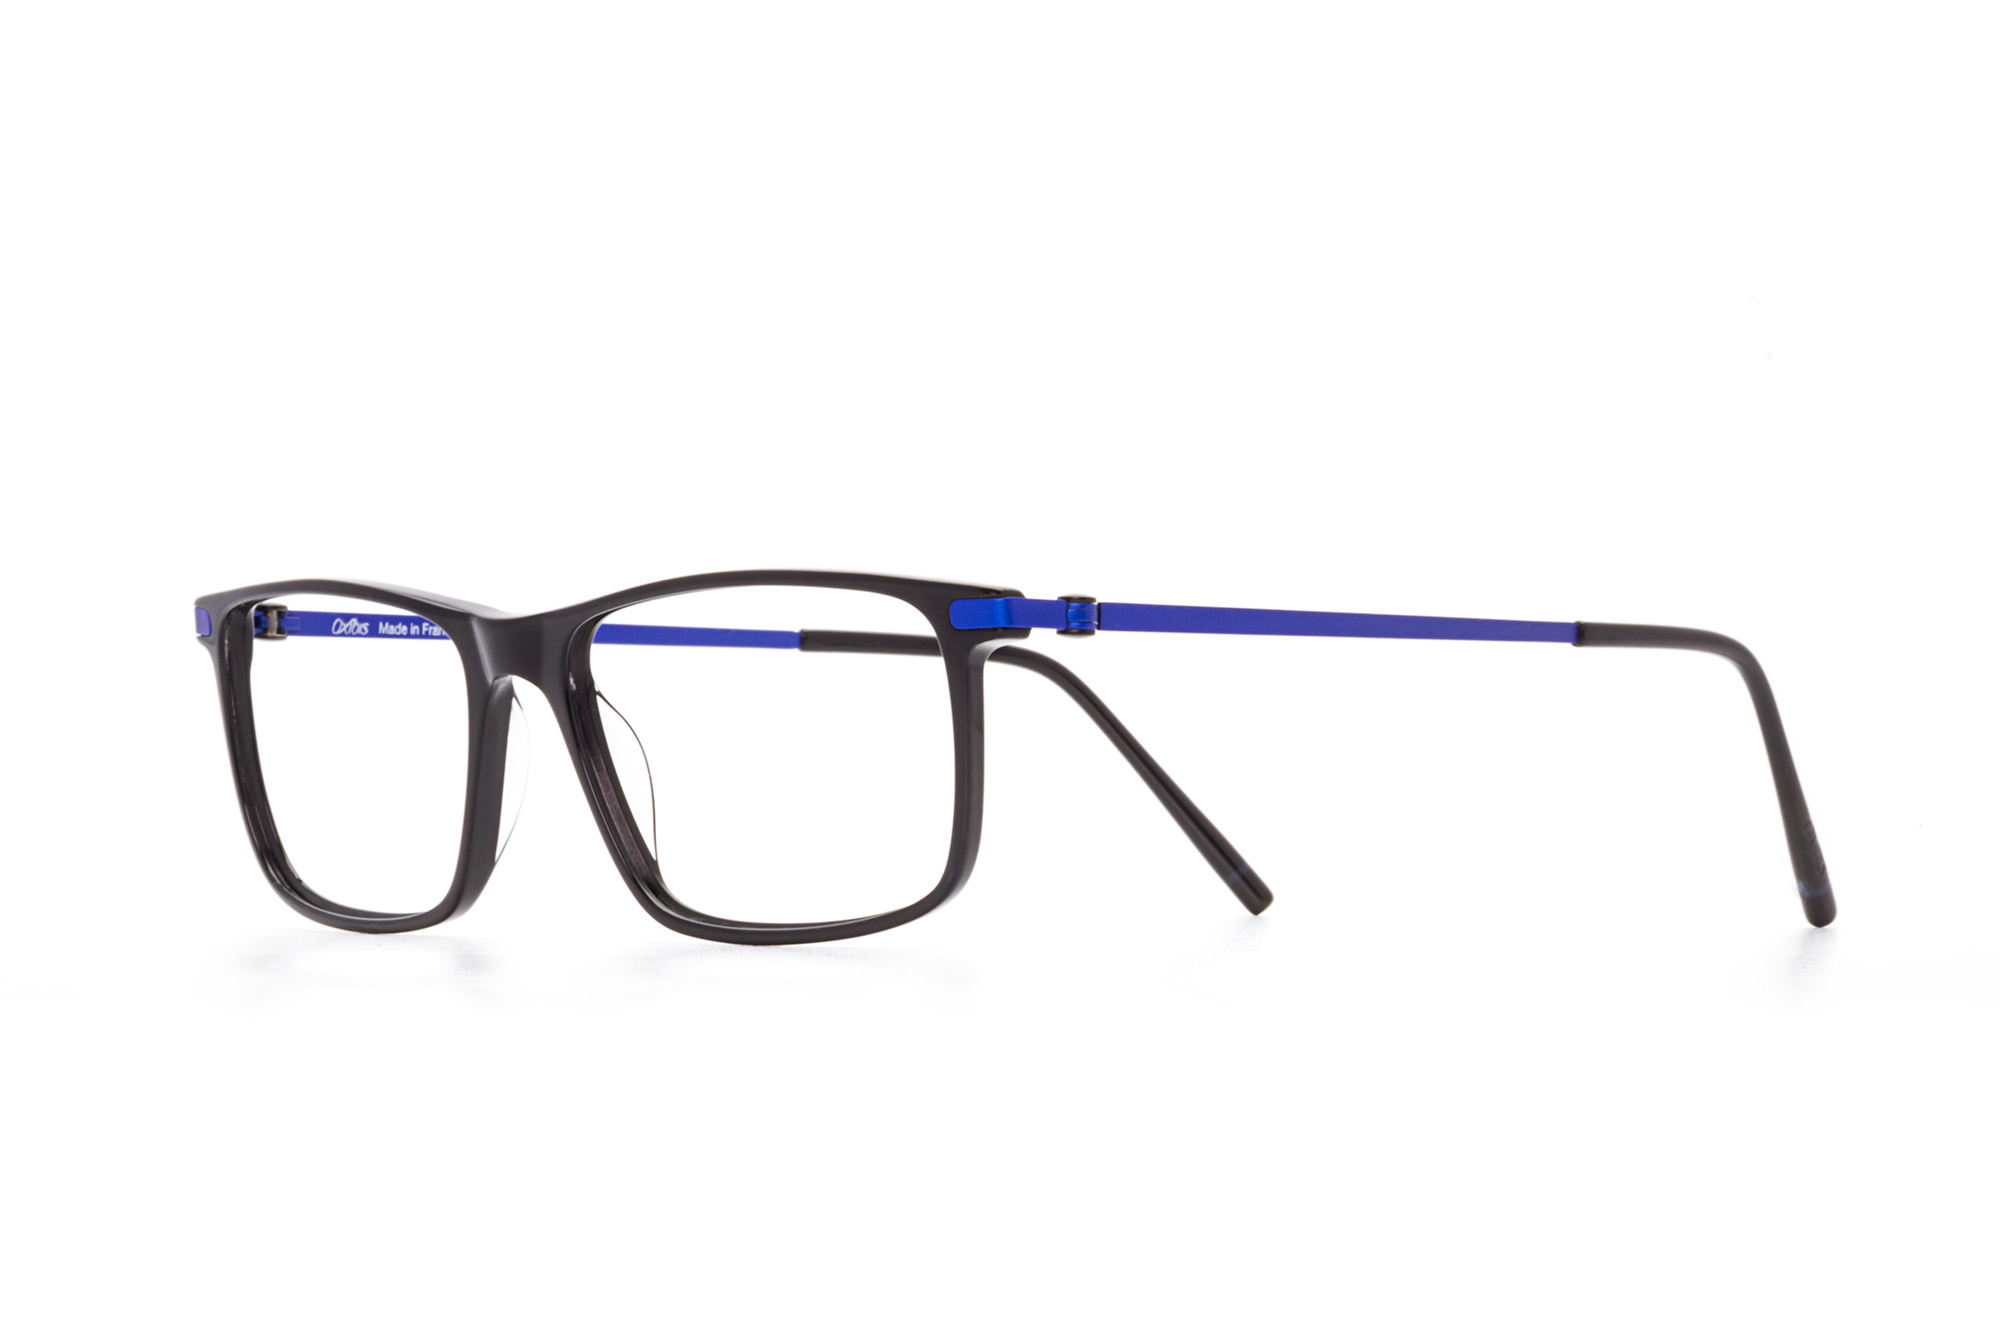 Kullanıma hazır optik tarzda işlenmiş camları ve optik uyumlu çerçevesiyle Oxibis Loop LO8C1 52 orta ekartman siyah ve mavi renkli dikdörtgen model unisex gözlüğü optisyen veya gözlükçülerin sunacağı numarasız veya numaralı cam özelleştirmeleriyle size en yakın gözlükçüden satın alabilirsiniz.